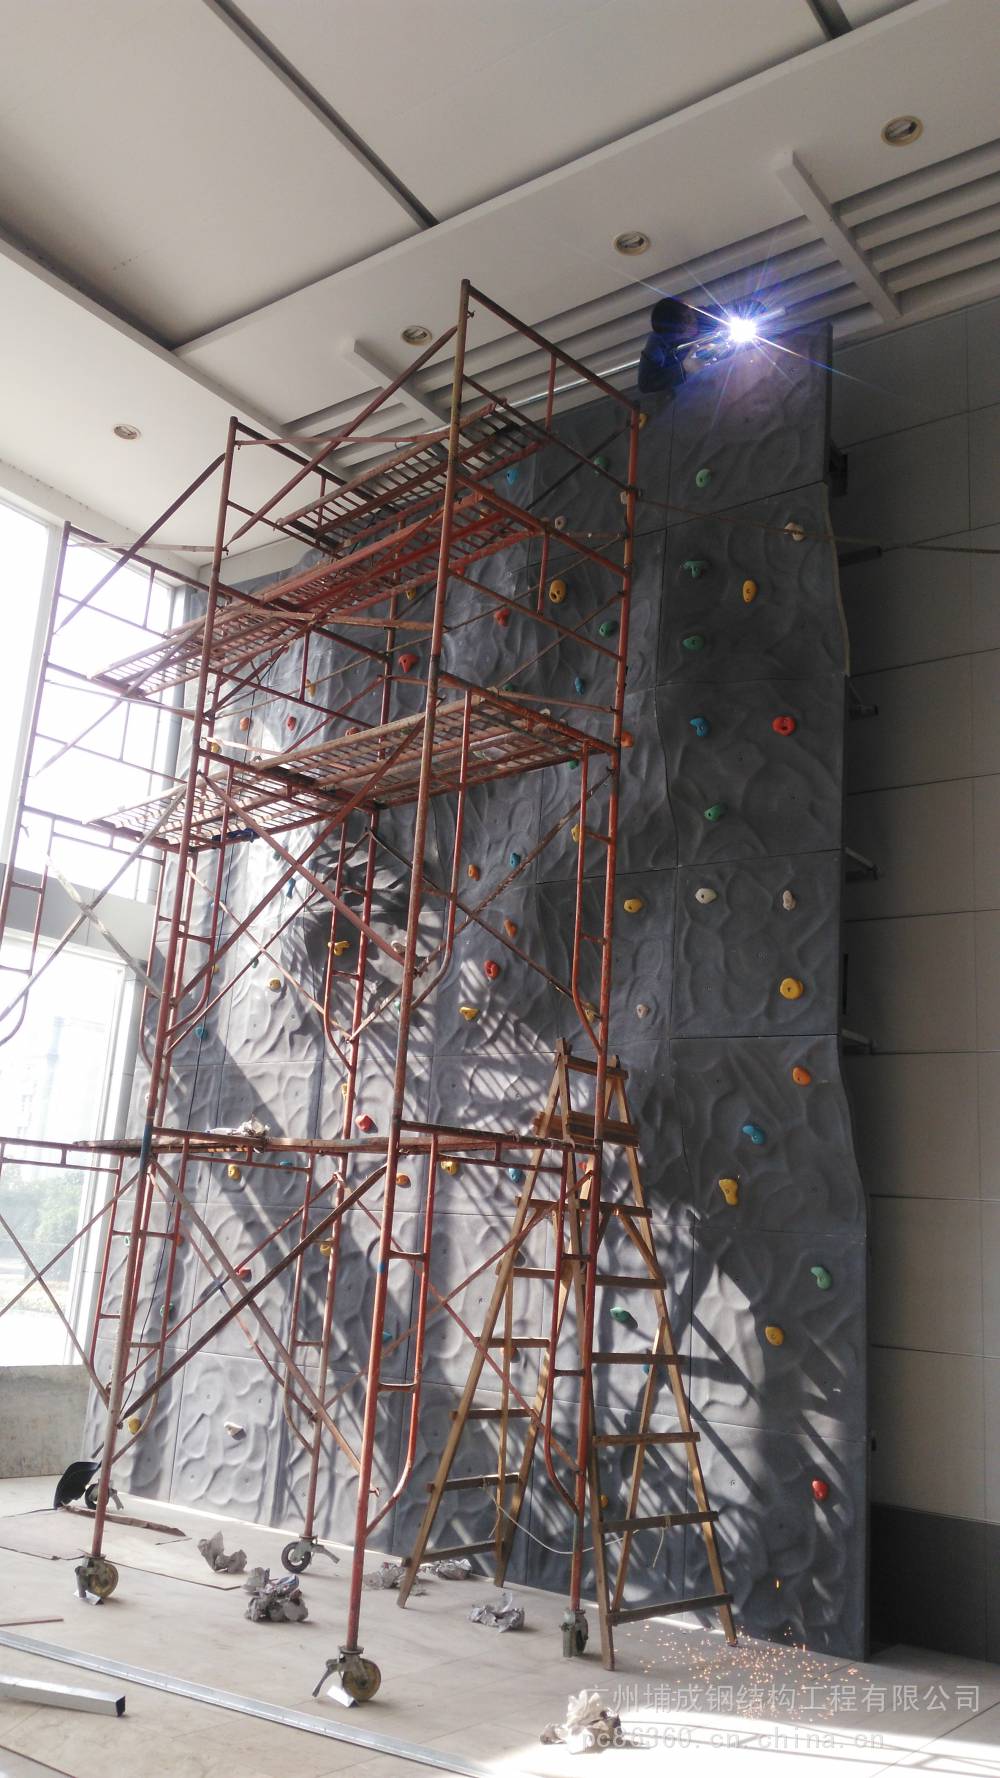 广州锻炼竞技拓展攀岩墙项目|仿自然山石攀岩壁设计制作